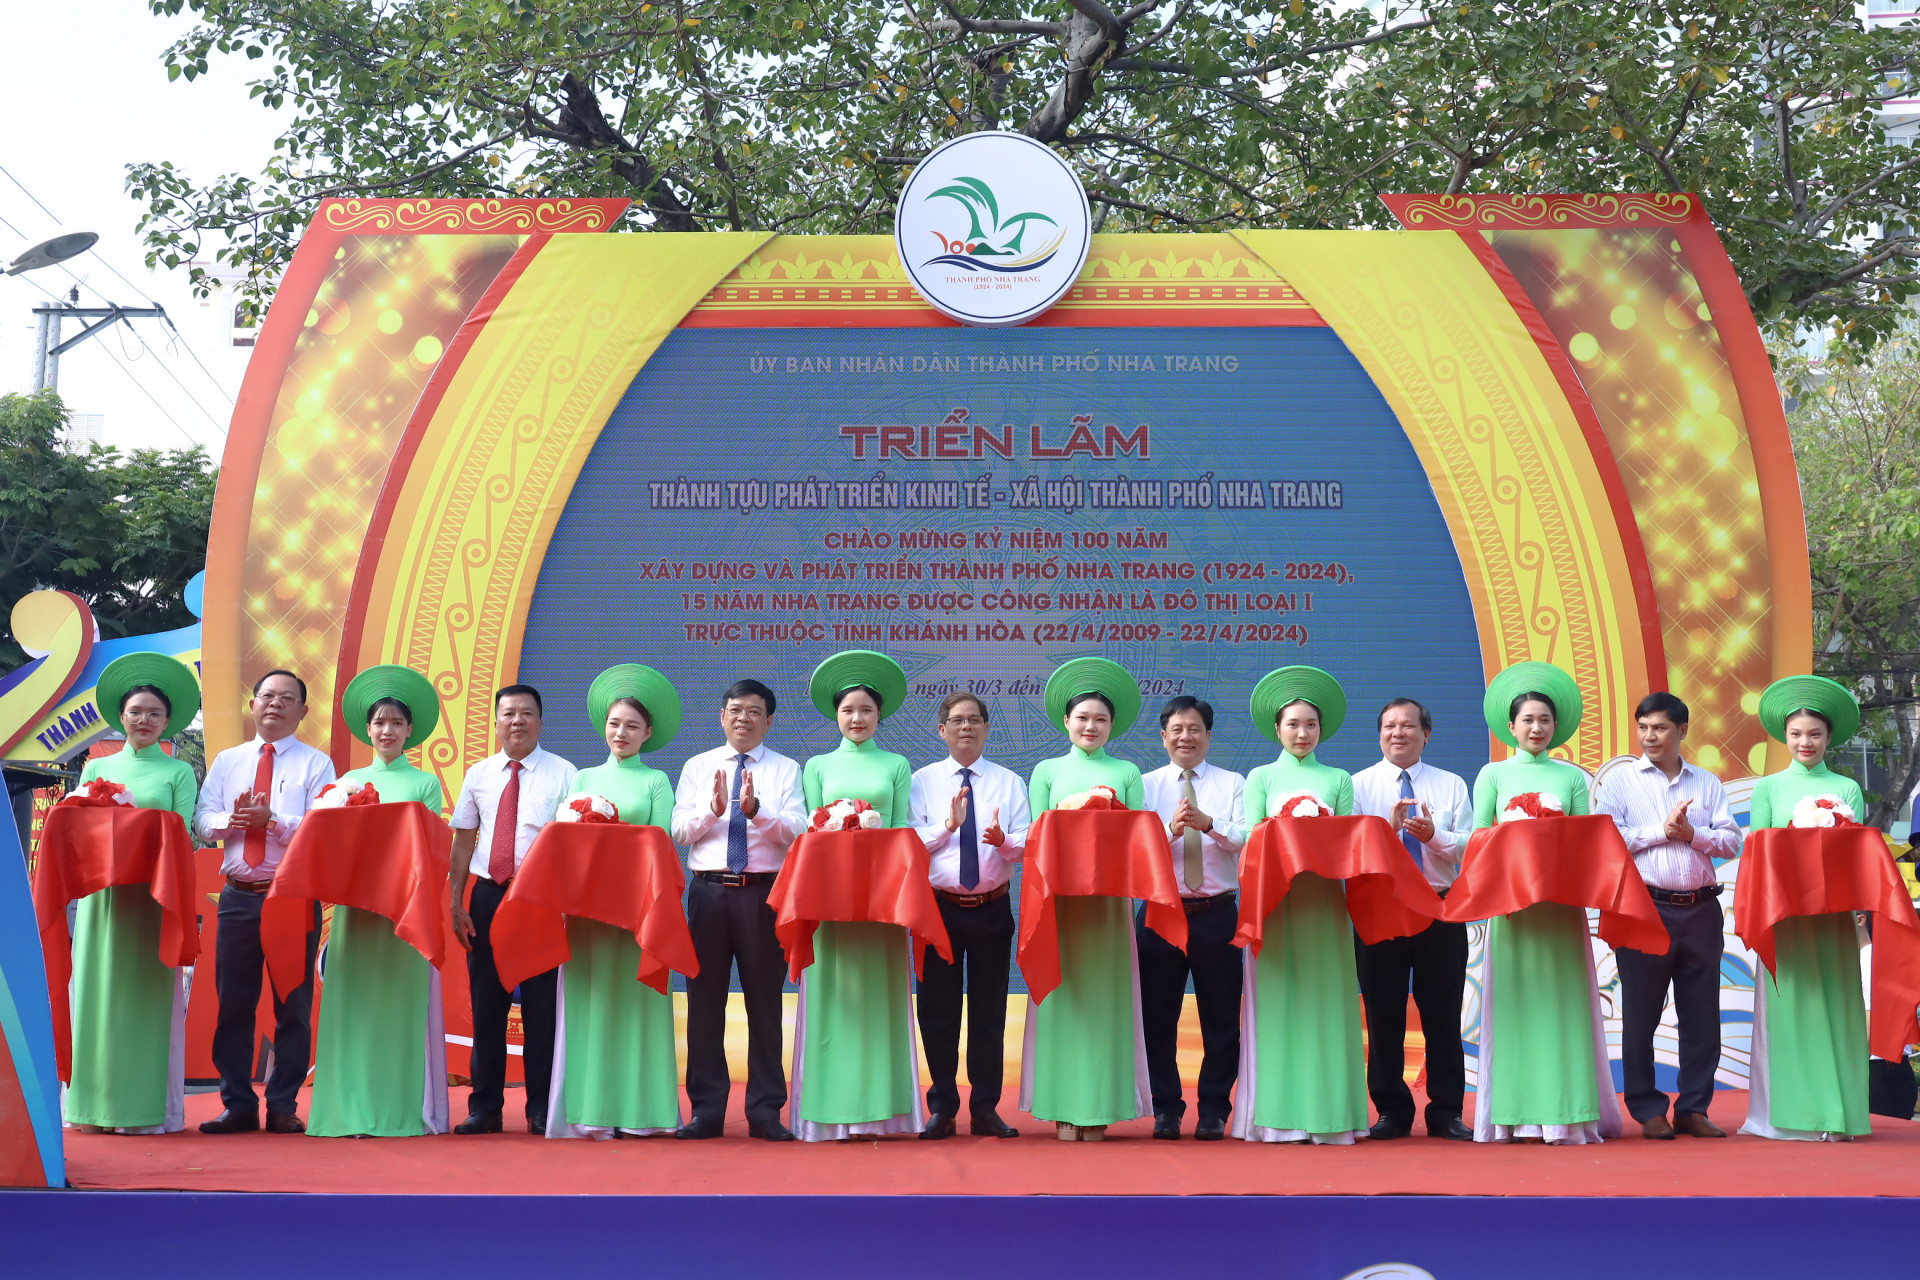 Đồng chí Nguyễn Tấn Tuân, cùng lãnh đạo TP. Nha Trang thực hiện nghi thức cắt băng khai mạc triển lãm.